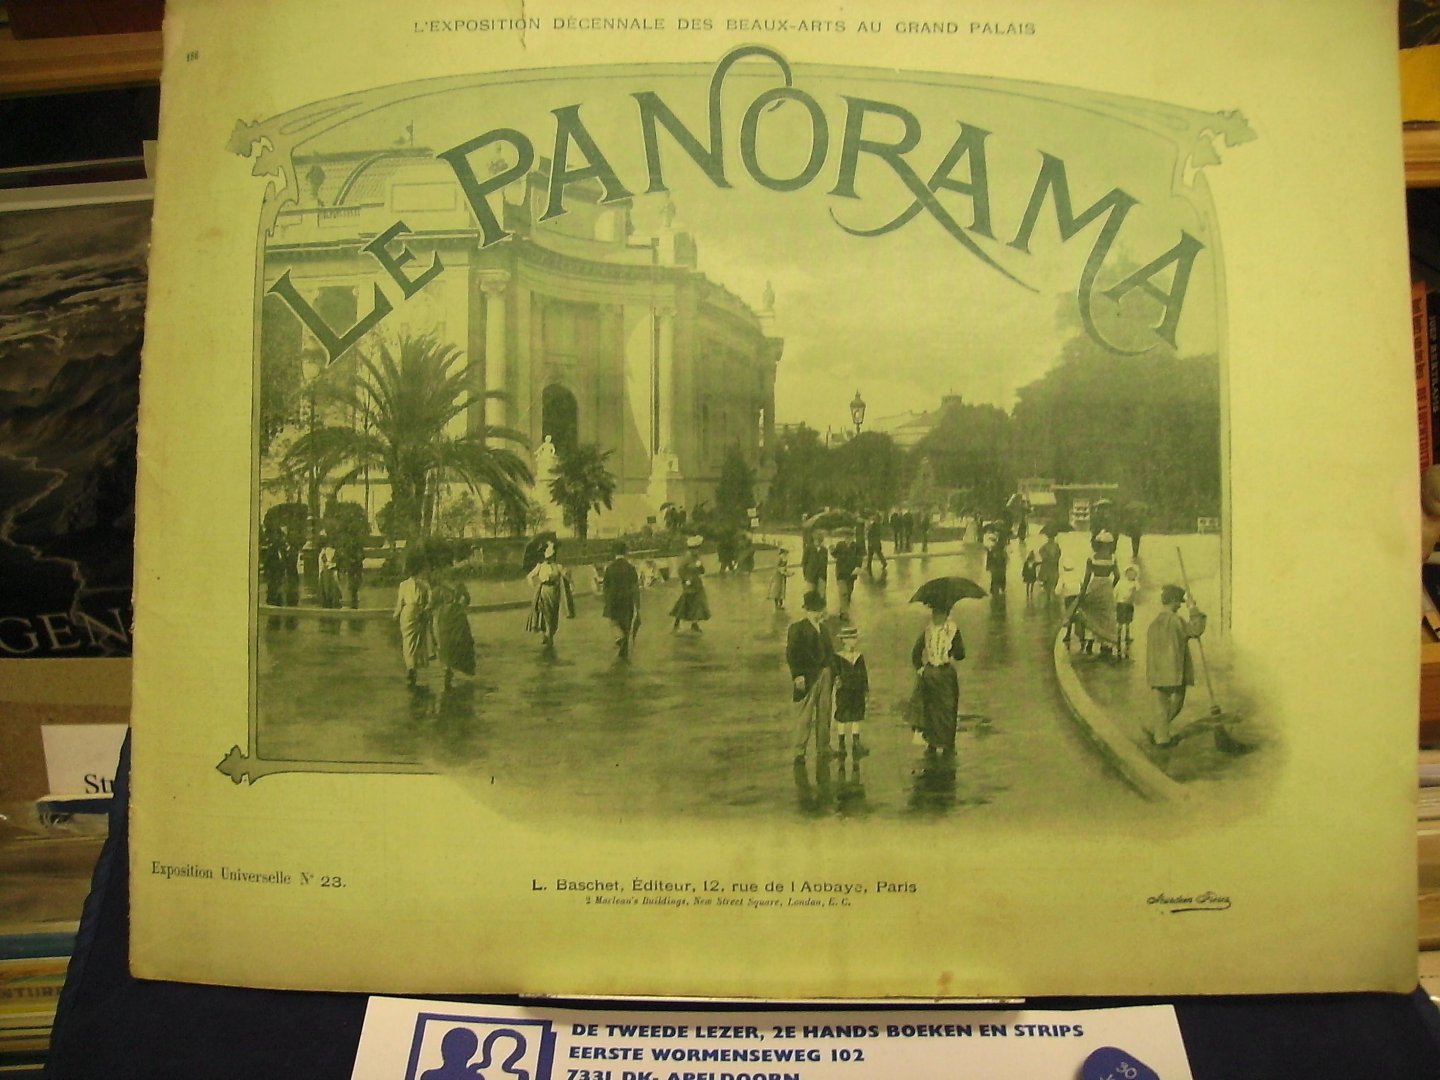 Baschet, L - Le Panorama: L'Exposition décennale des beaux-arts au grand palais &  L'Exposition centennale de L'art Français 1800-1899